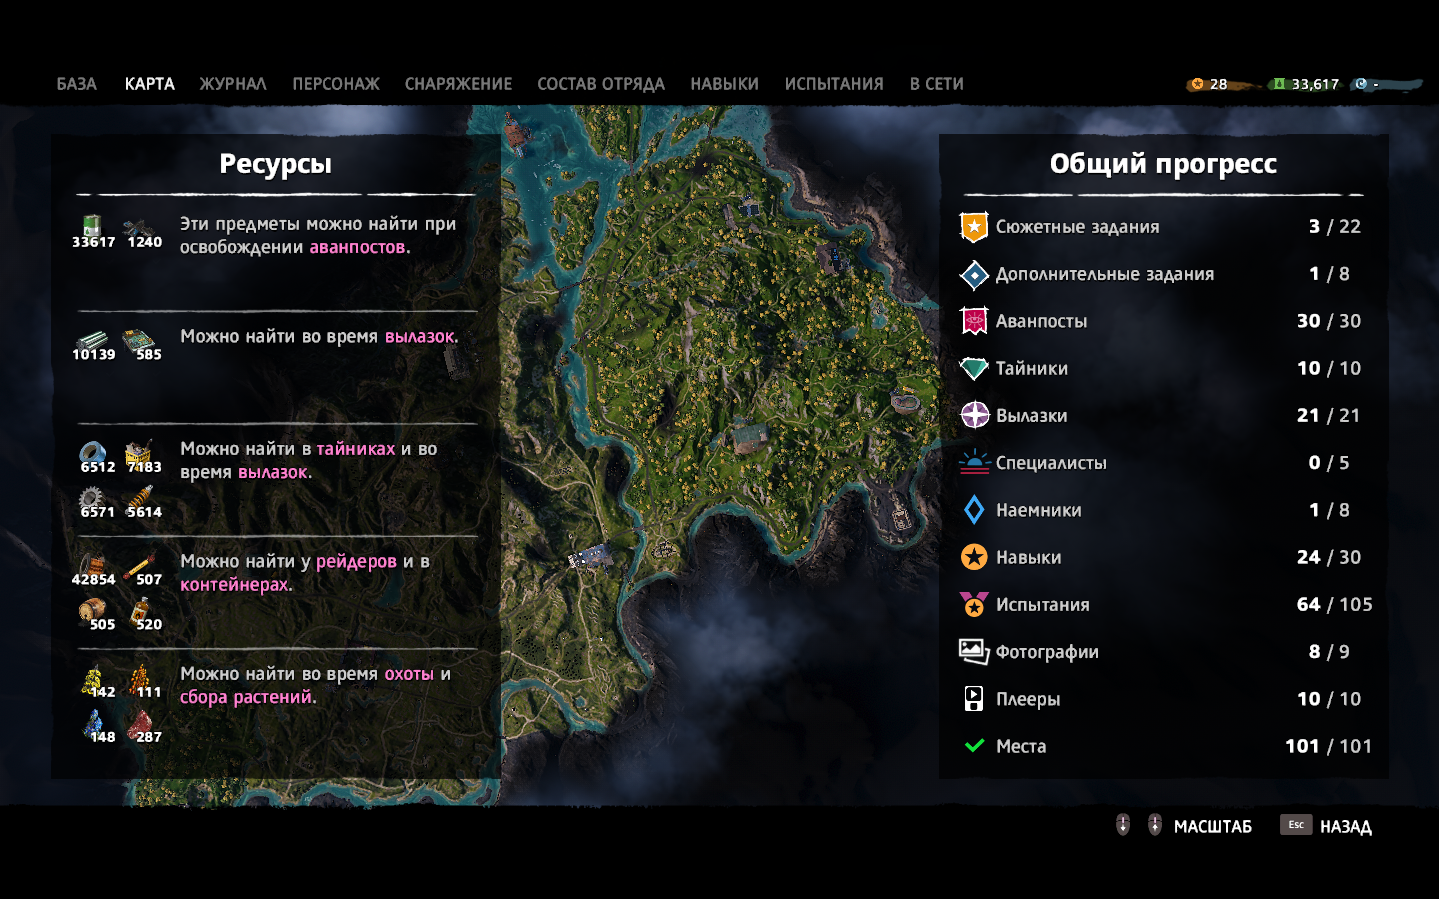 Far cry 3: где скачать игру, где найти сохранения, системные требования, язык